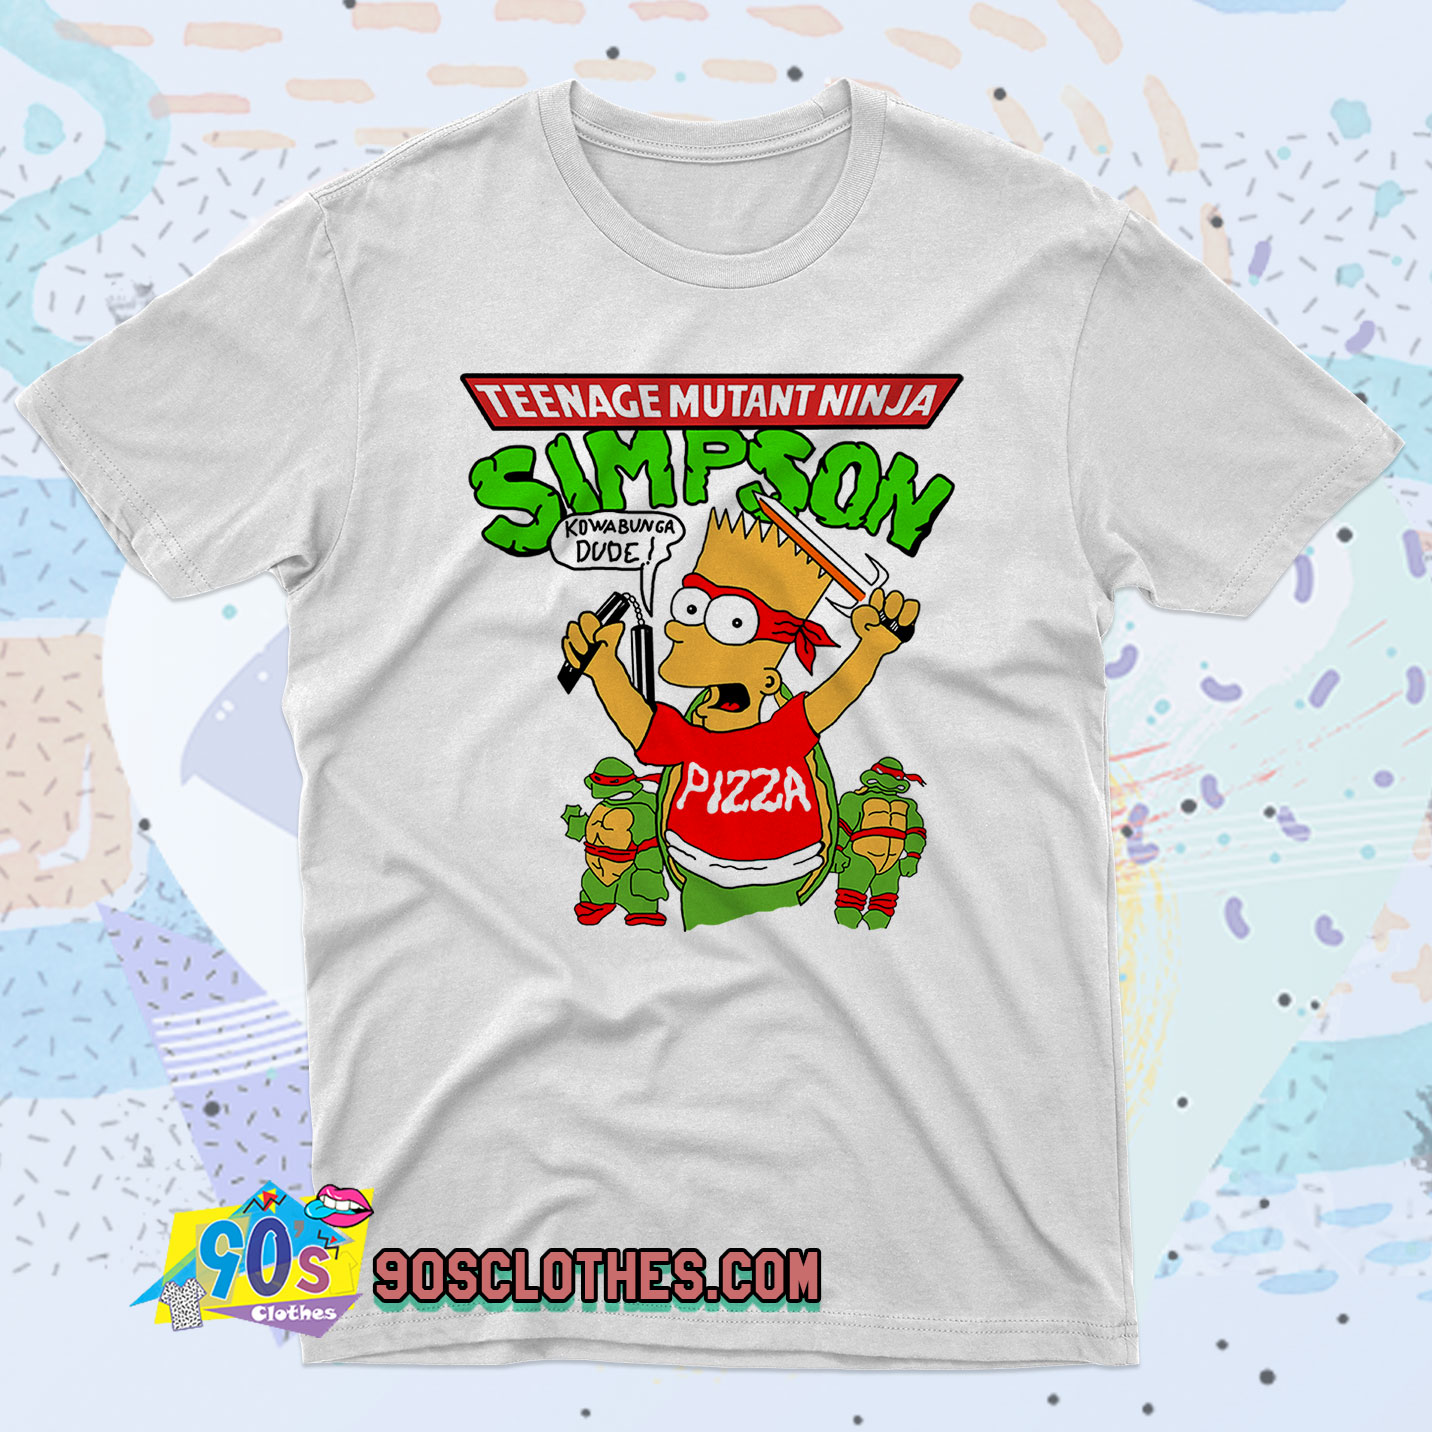 Vintage Bart Simpson Ninja Turtles Shirt - Vintagenclassic Tee